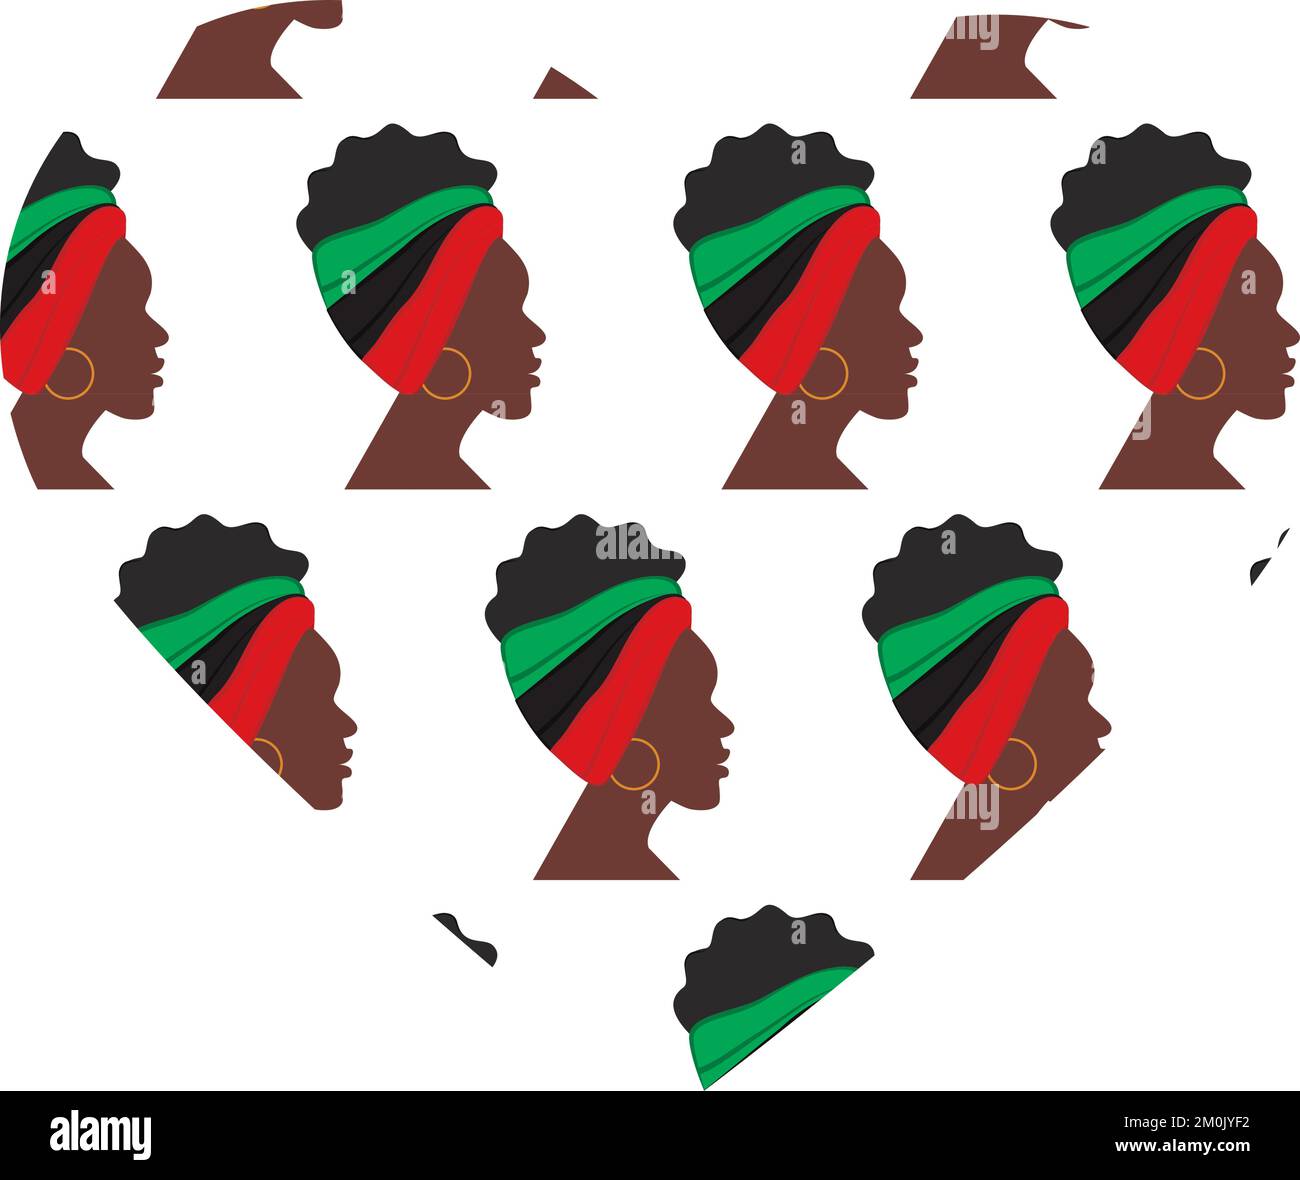 Konturumriss einer Herzform mit einem Muster aus dem Profil afroamerikanischer Frauen nach rechts gedreht. Konzeptbild. Abstrakter Hintergrund. Textur. Eignet sich für Schriftzeichen, Poster oder Einladungen. Stock Vektor